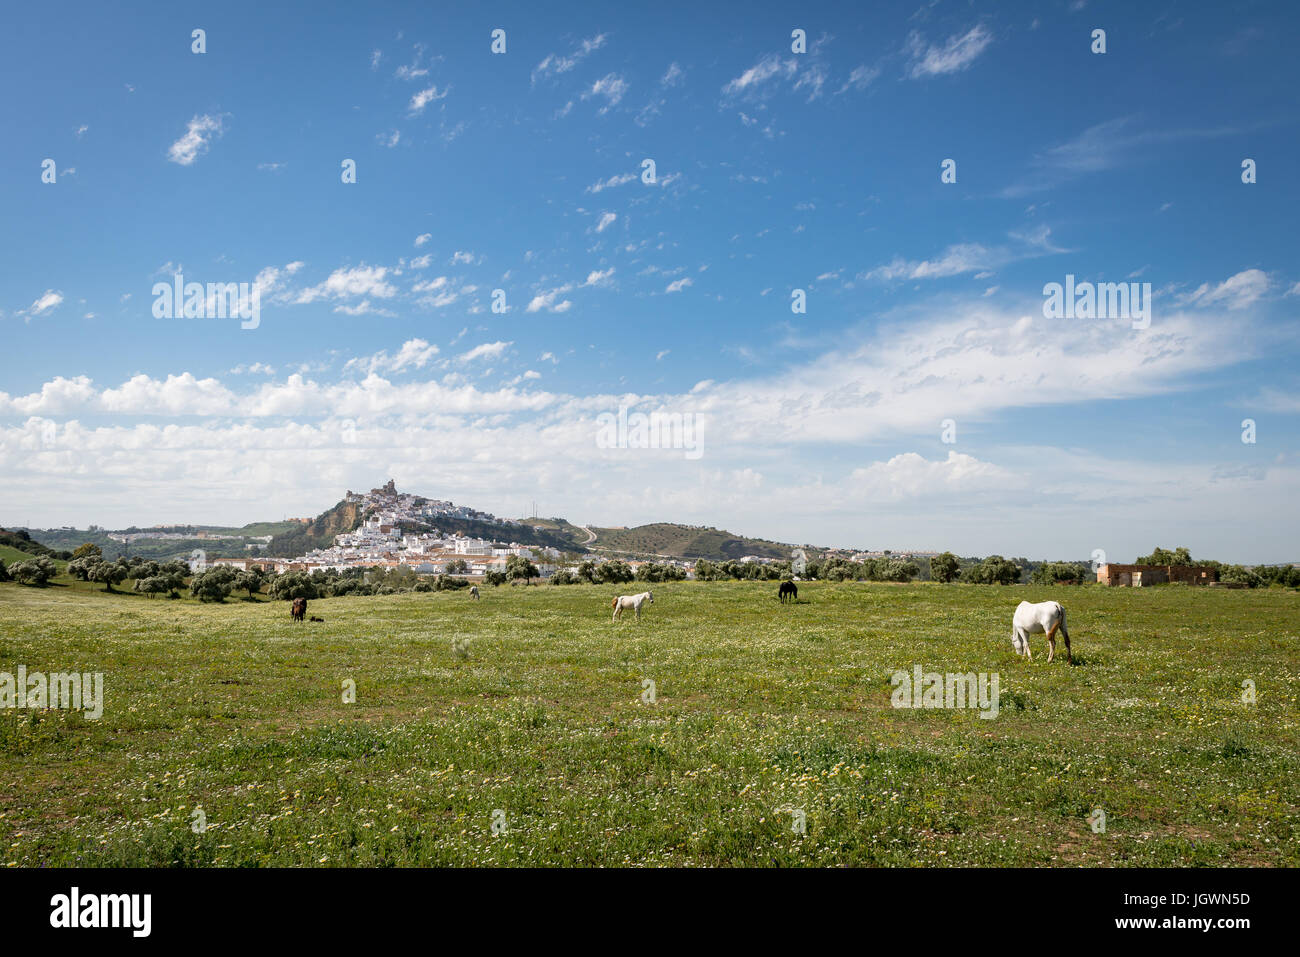 Vista bucólica de Arcos de la frontera desde el terreno con caballos, uno de los pueblos blancos, Andalucía, España, Europa Foto de stock